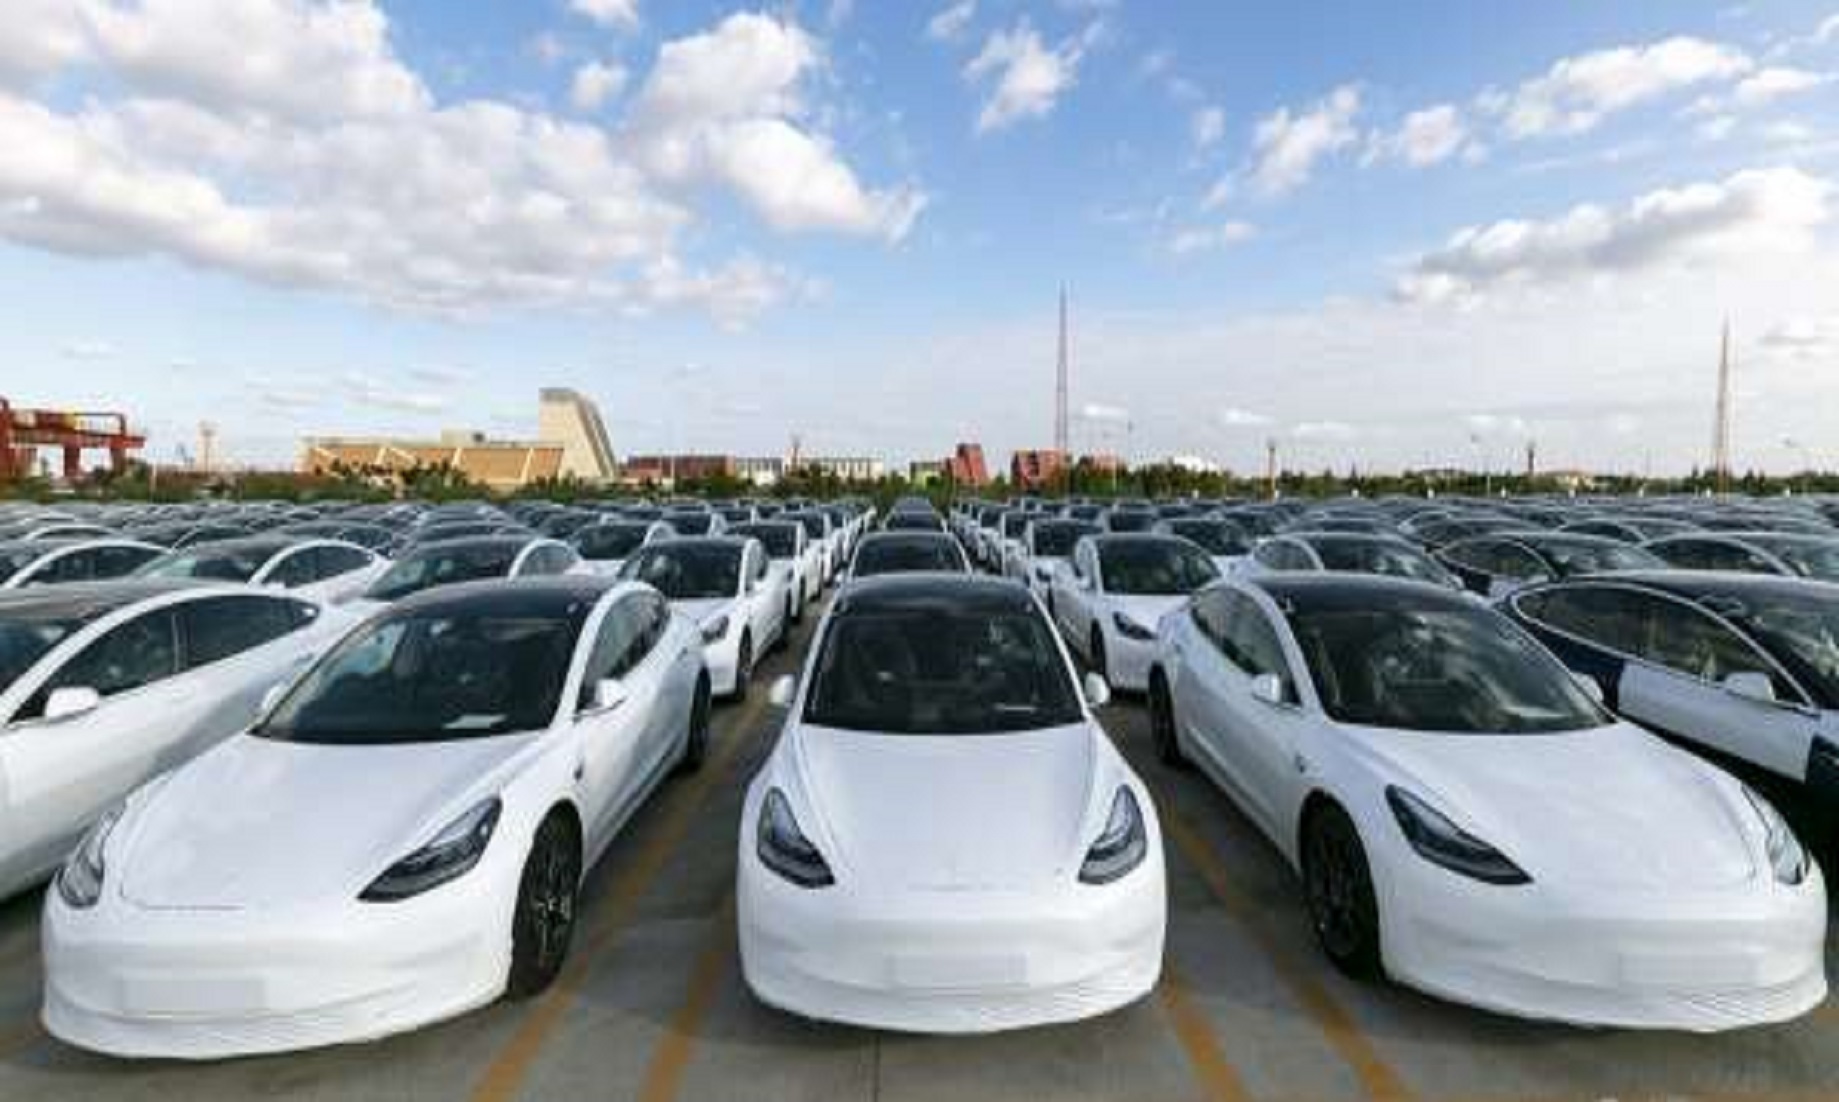 First Batch Of China-Made Tesla Sedans Arrives At Belgium’s Zeebrugge Port